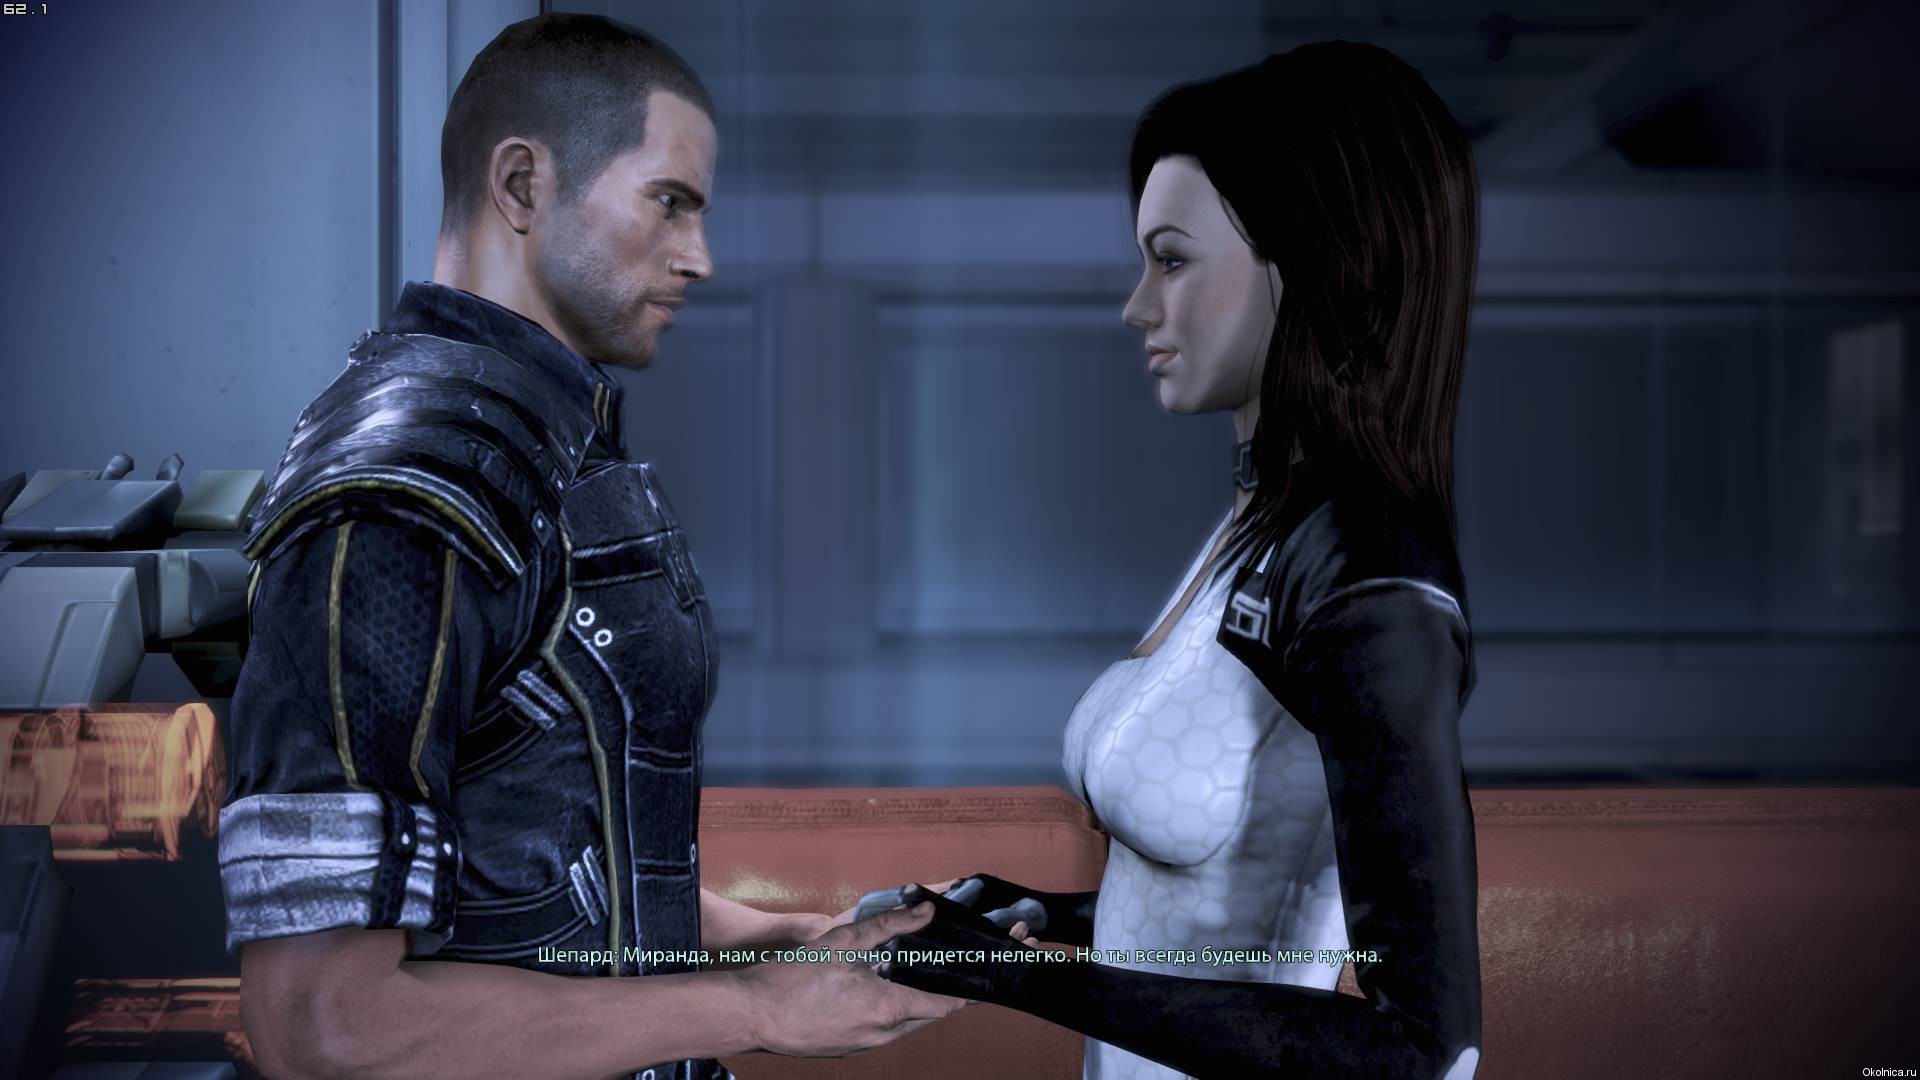 Mass Effect 04